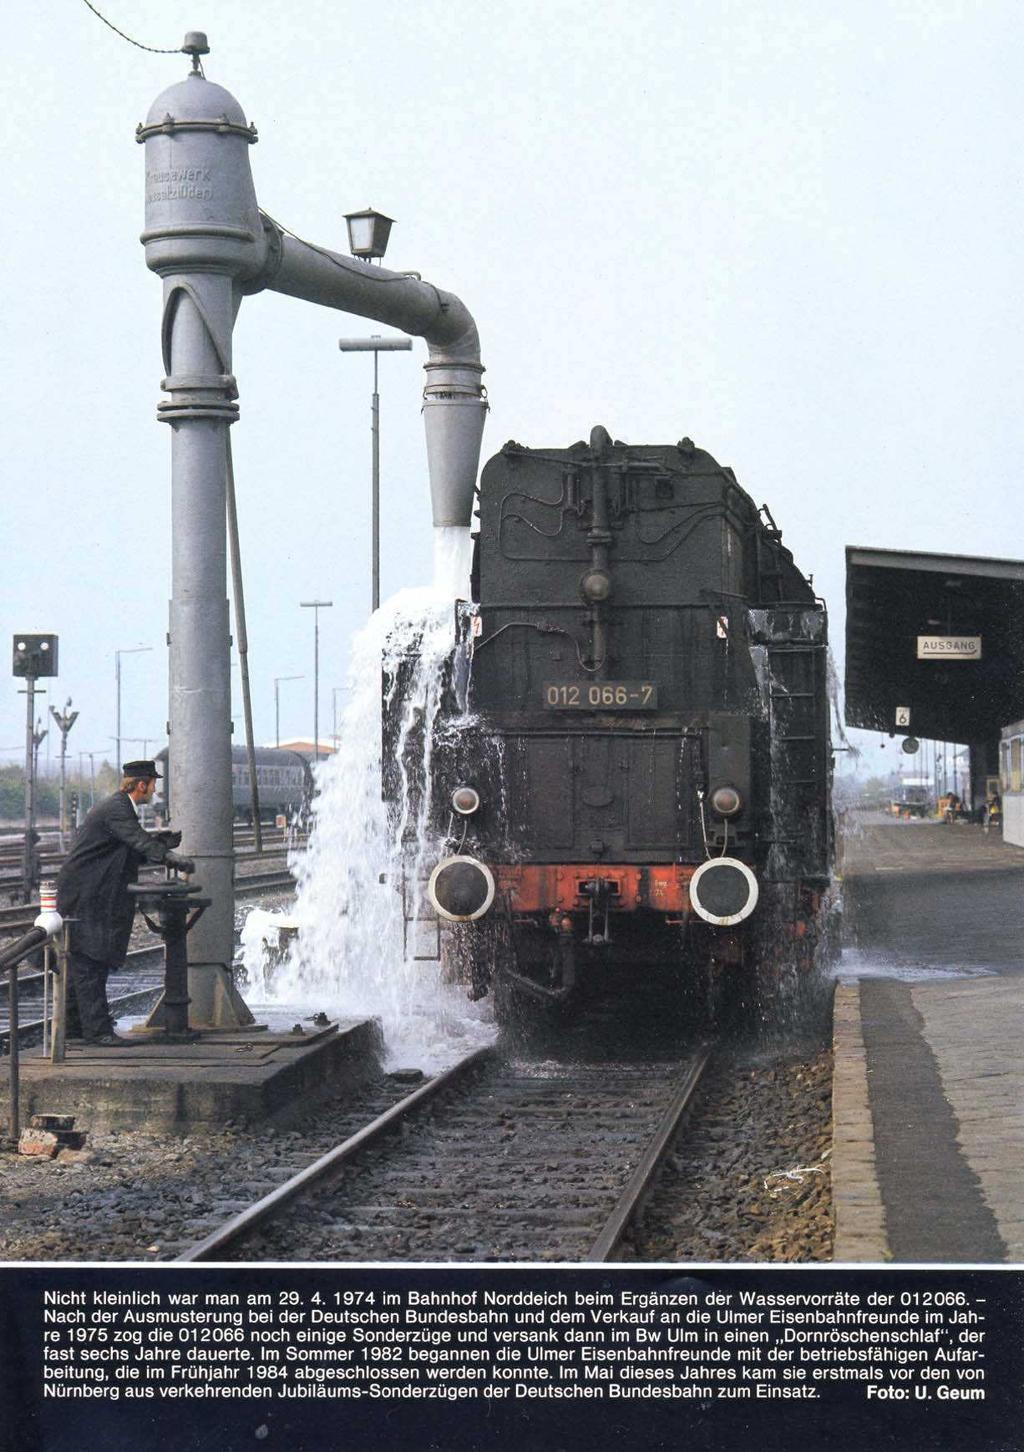 Nicht kleinlich war man am 29. 4. 1974 im Bahnhof Norddeich beim Ergänzen der Wasservorräte der 012066.